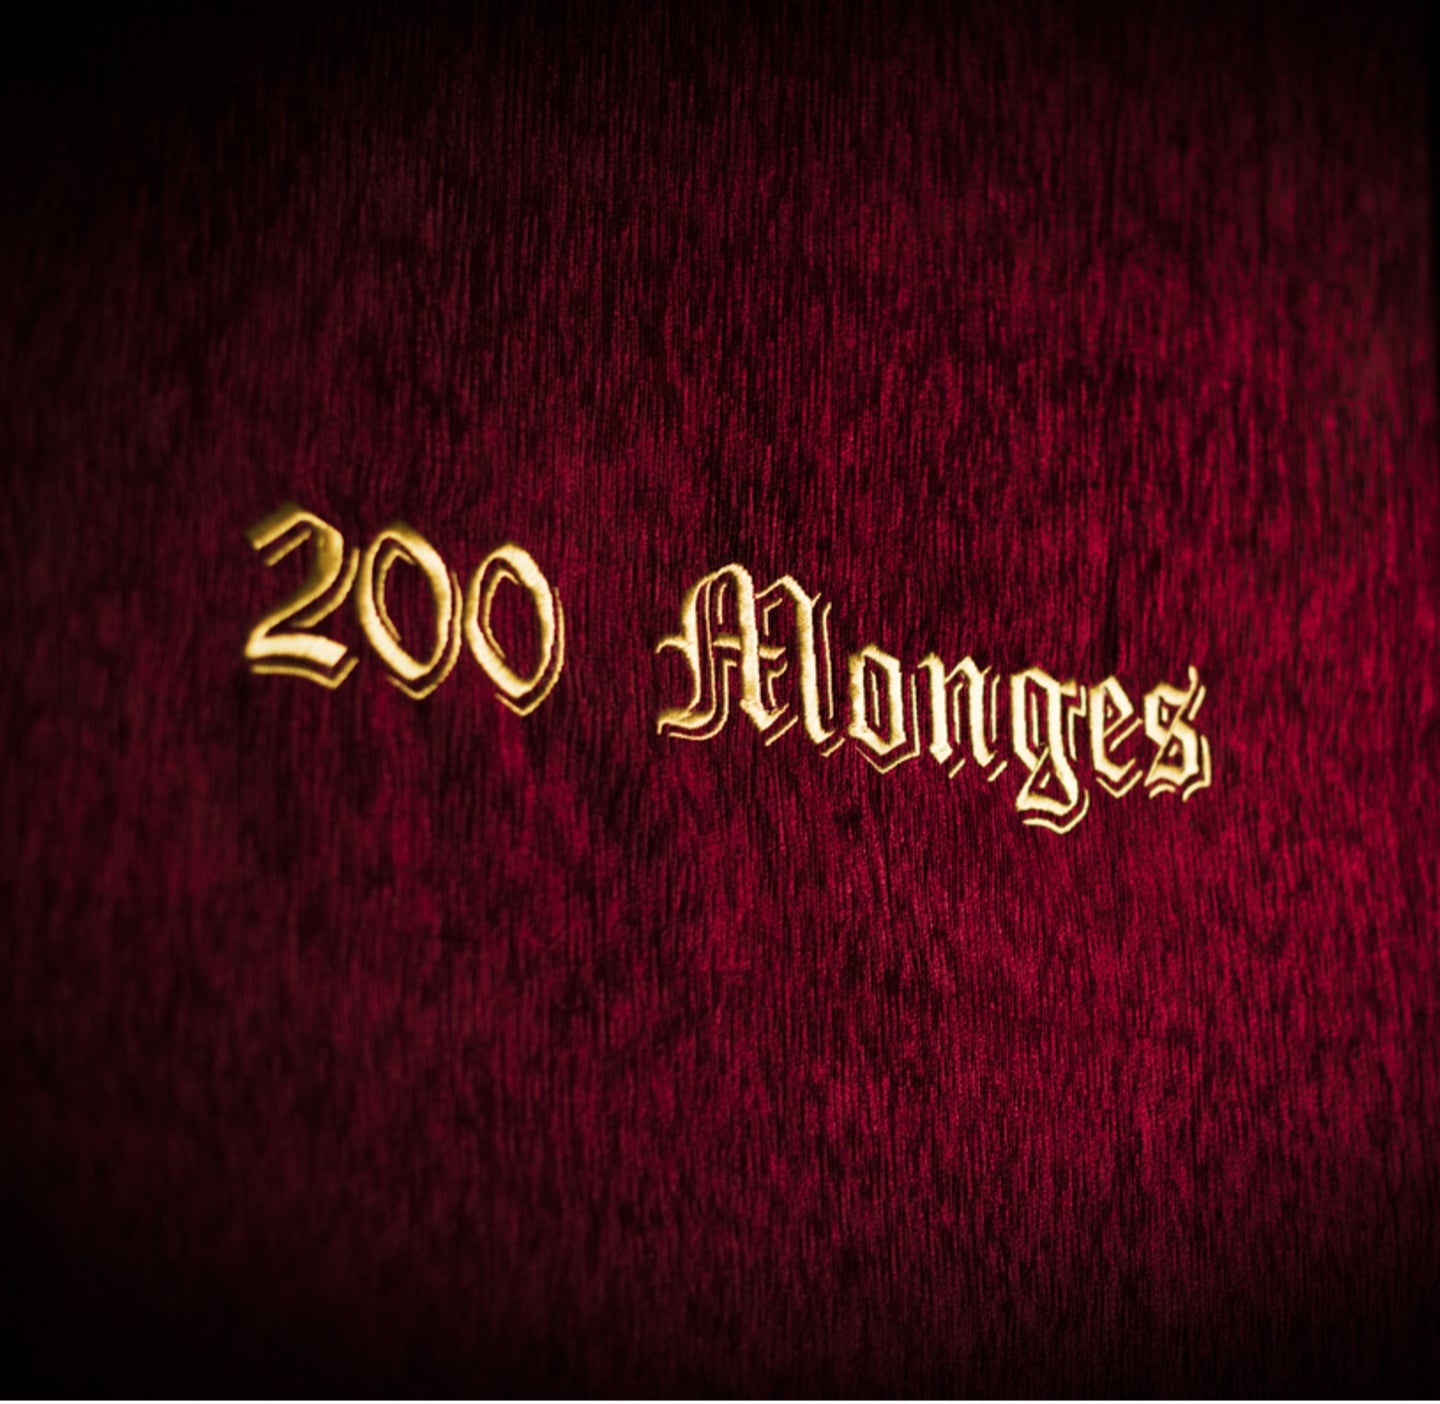 200_monges-vinicola-real.jpg